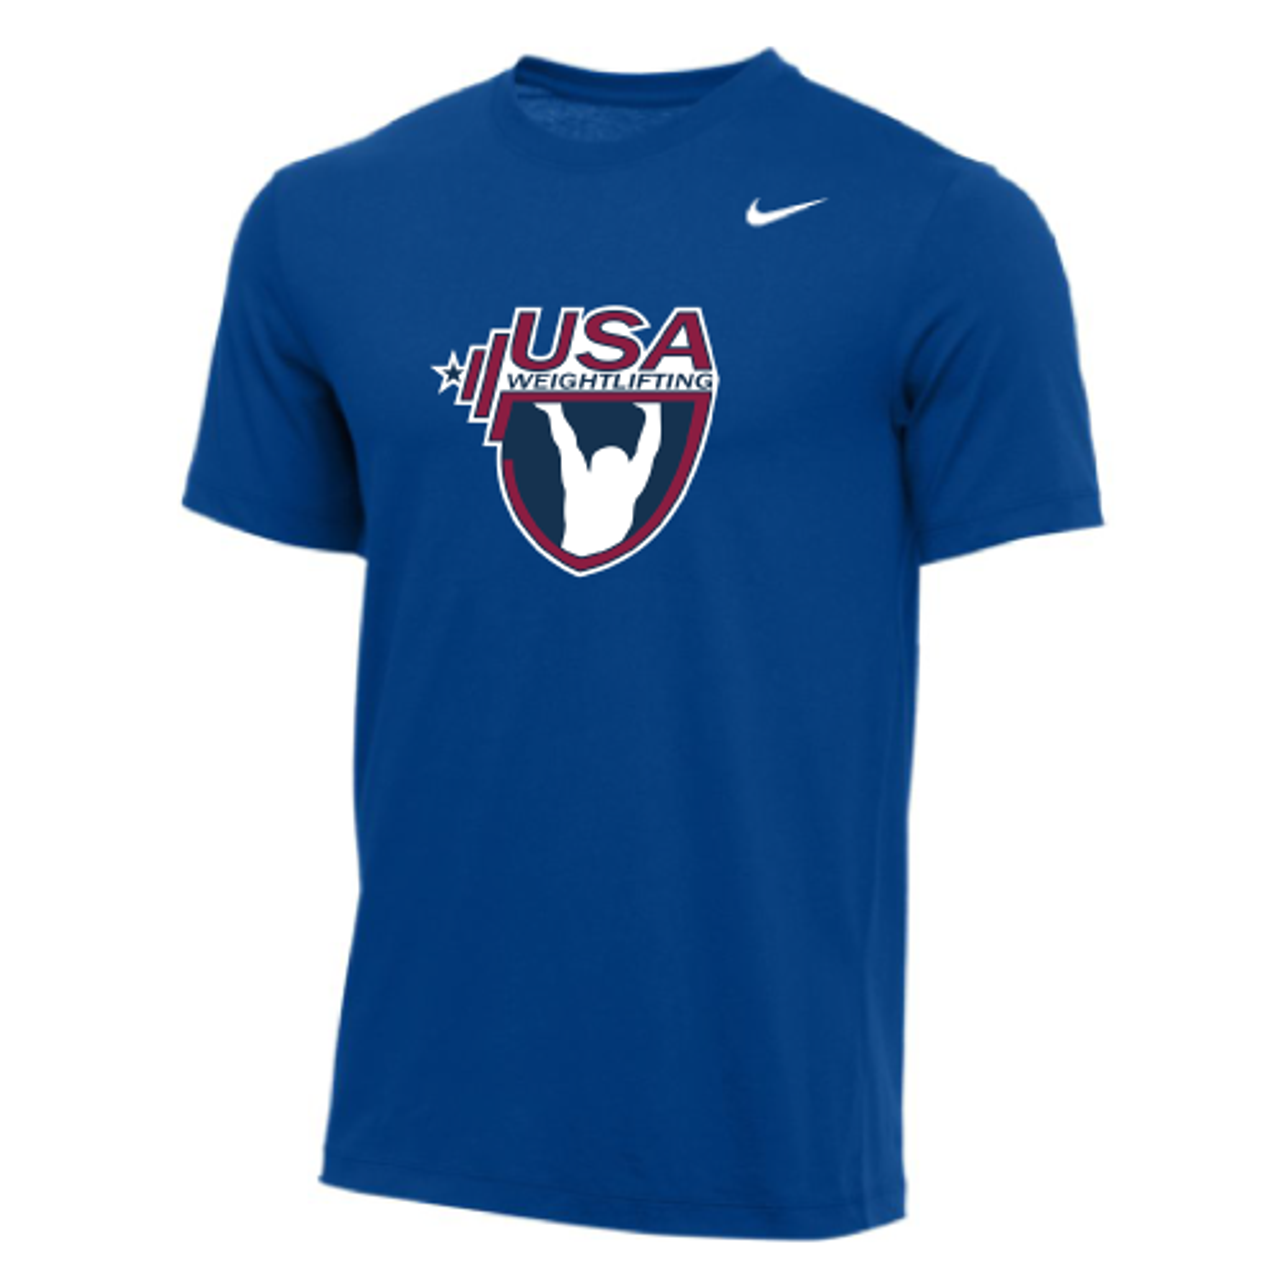 Nike Men's USA Weightlifting Tee - Royal